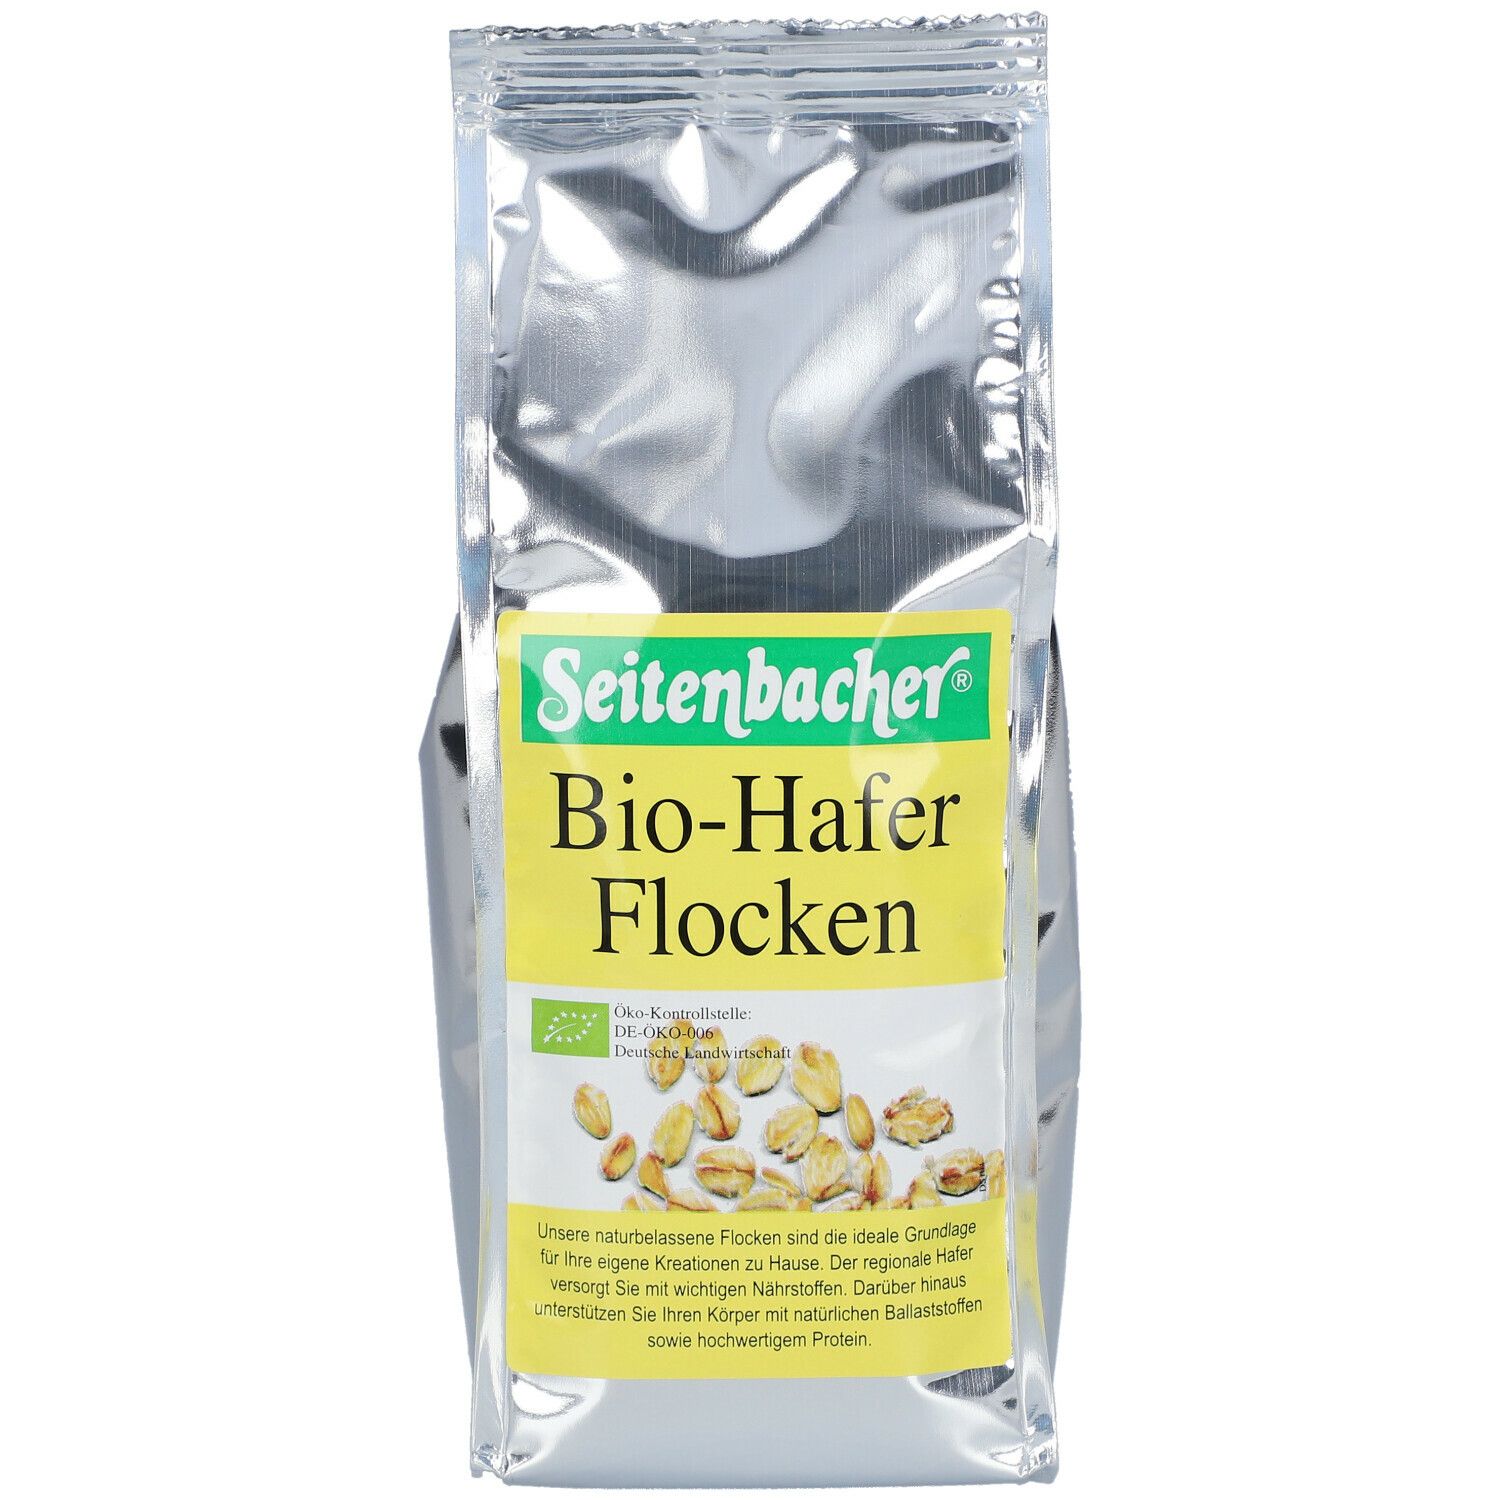 Seitenbacher® Bio-Hafer Flocken